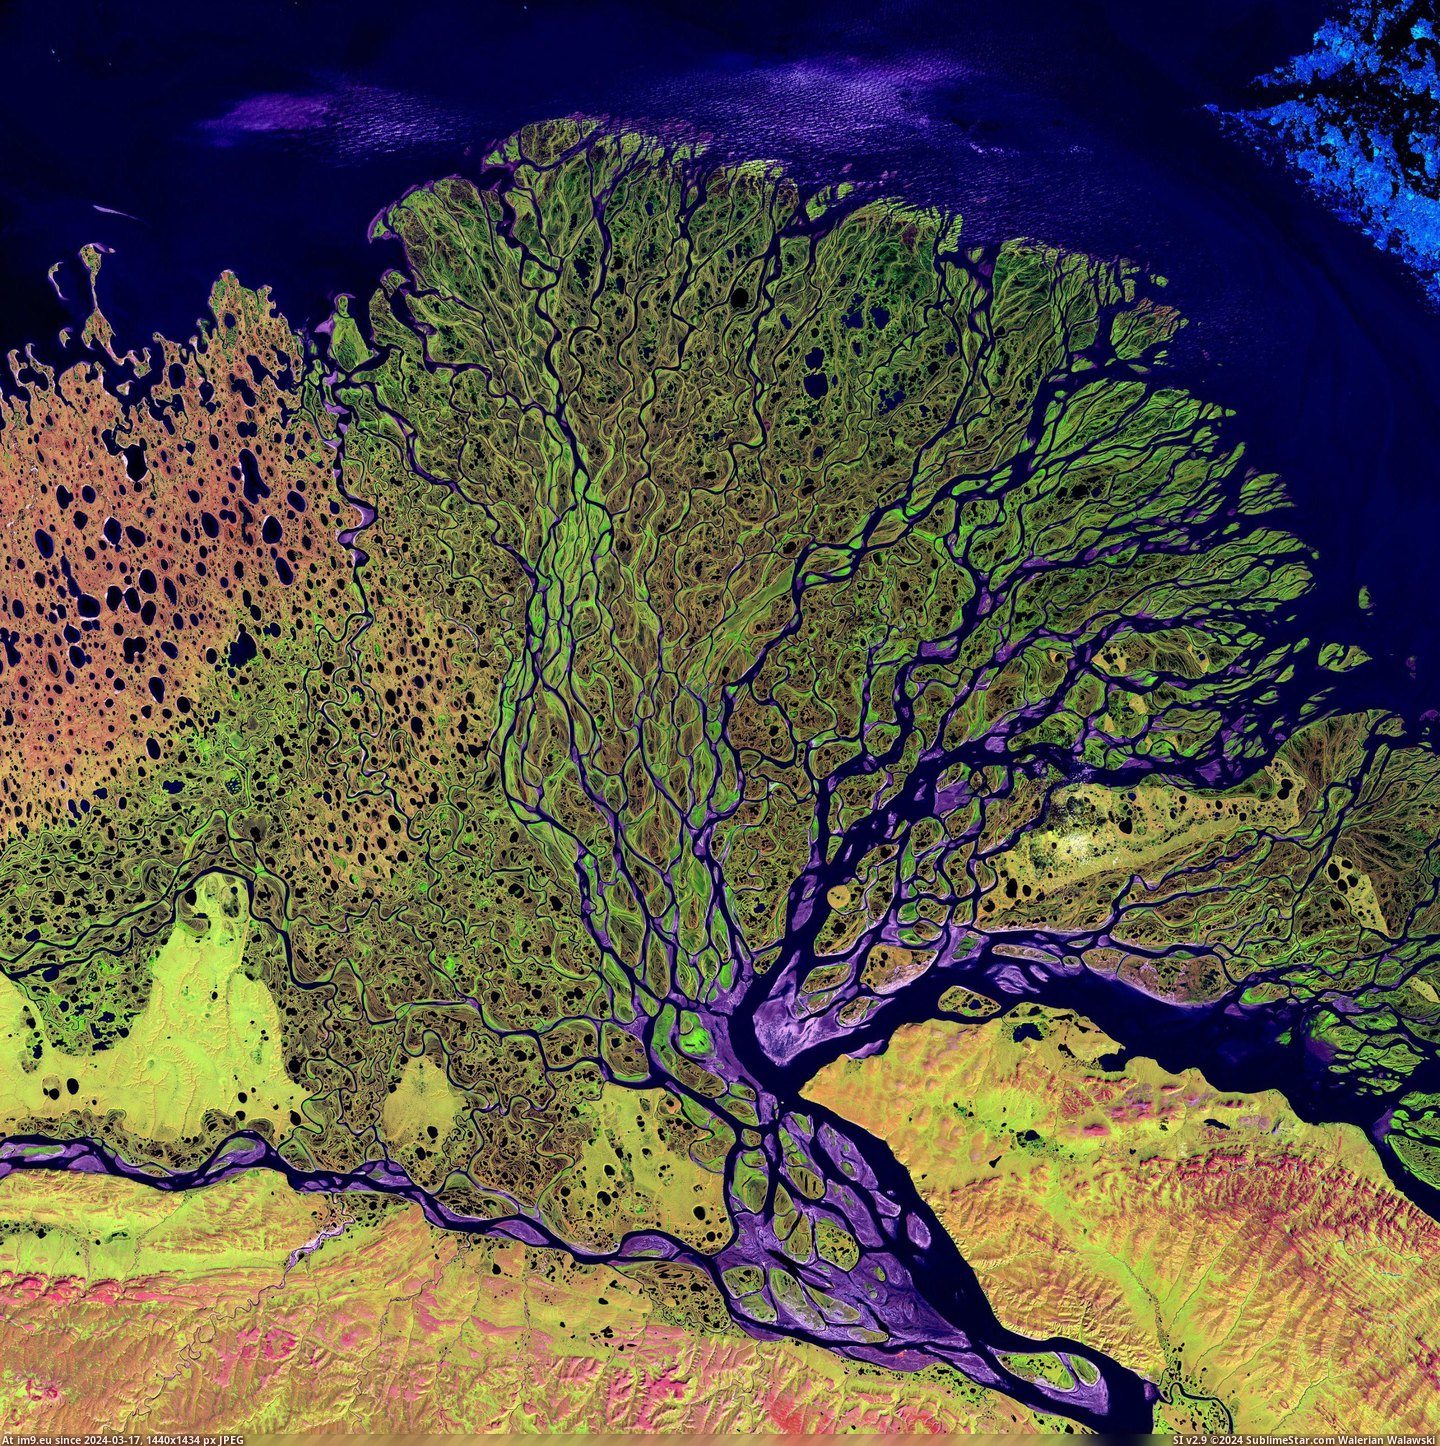 #River #Delta #Siberia #Lena [Earthporn] Lena River Delta, Siberia [3100 x 3100] Pic. (Bild von album My r/EARTHPORN favs))